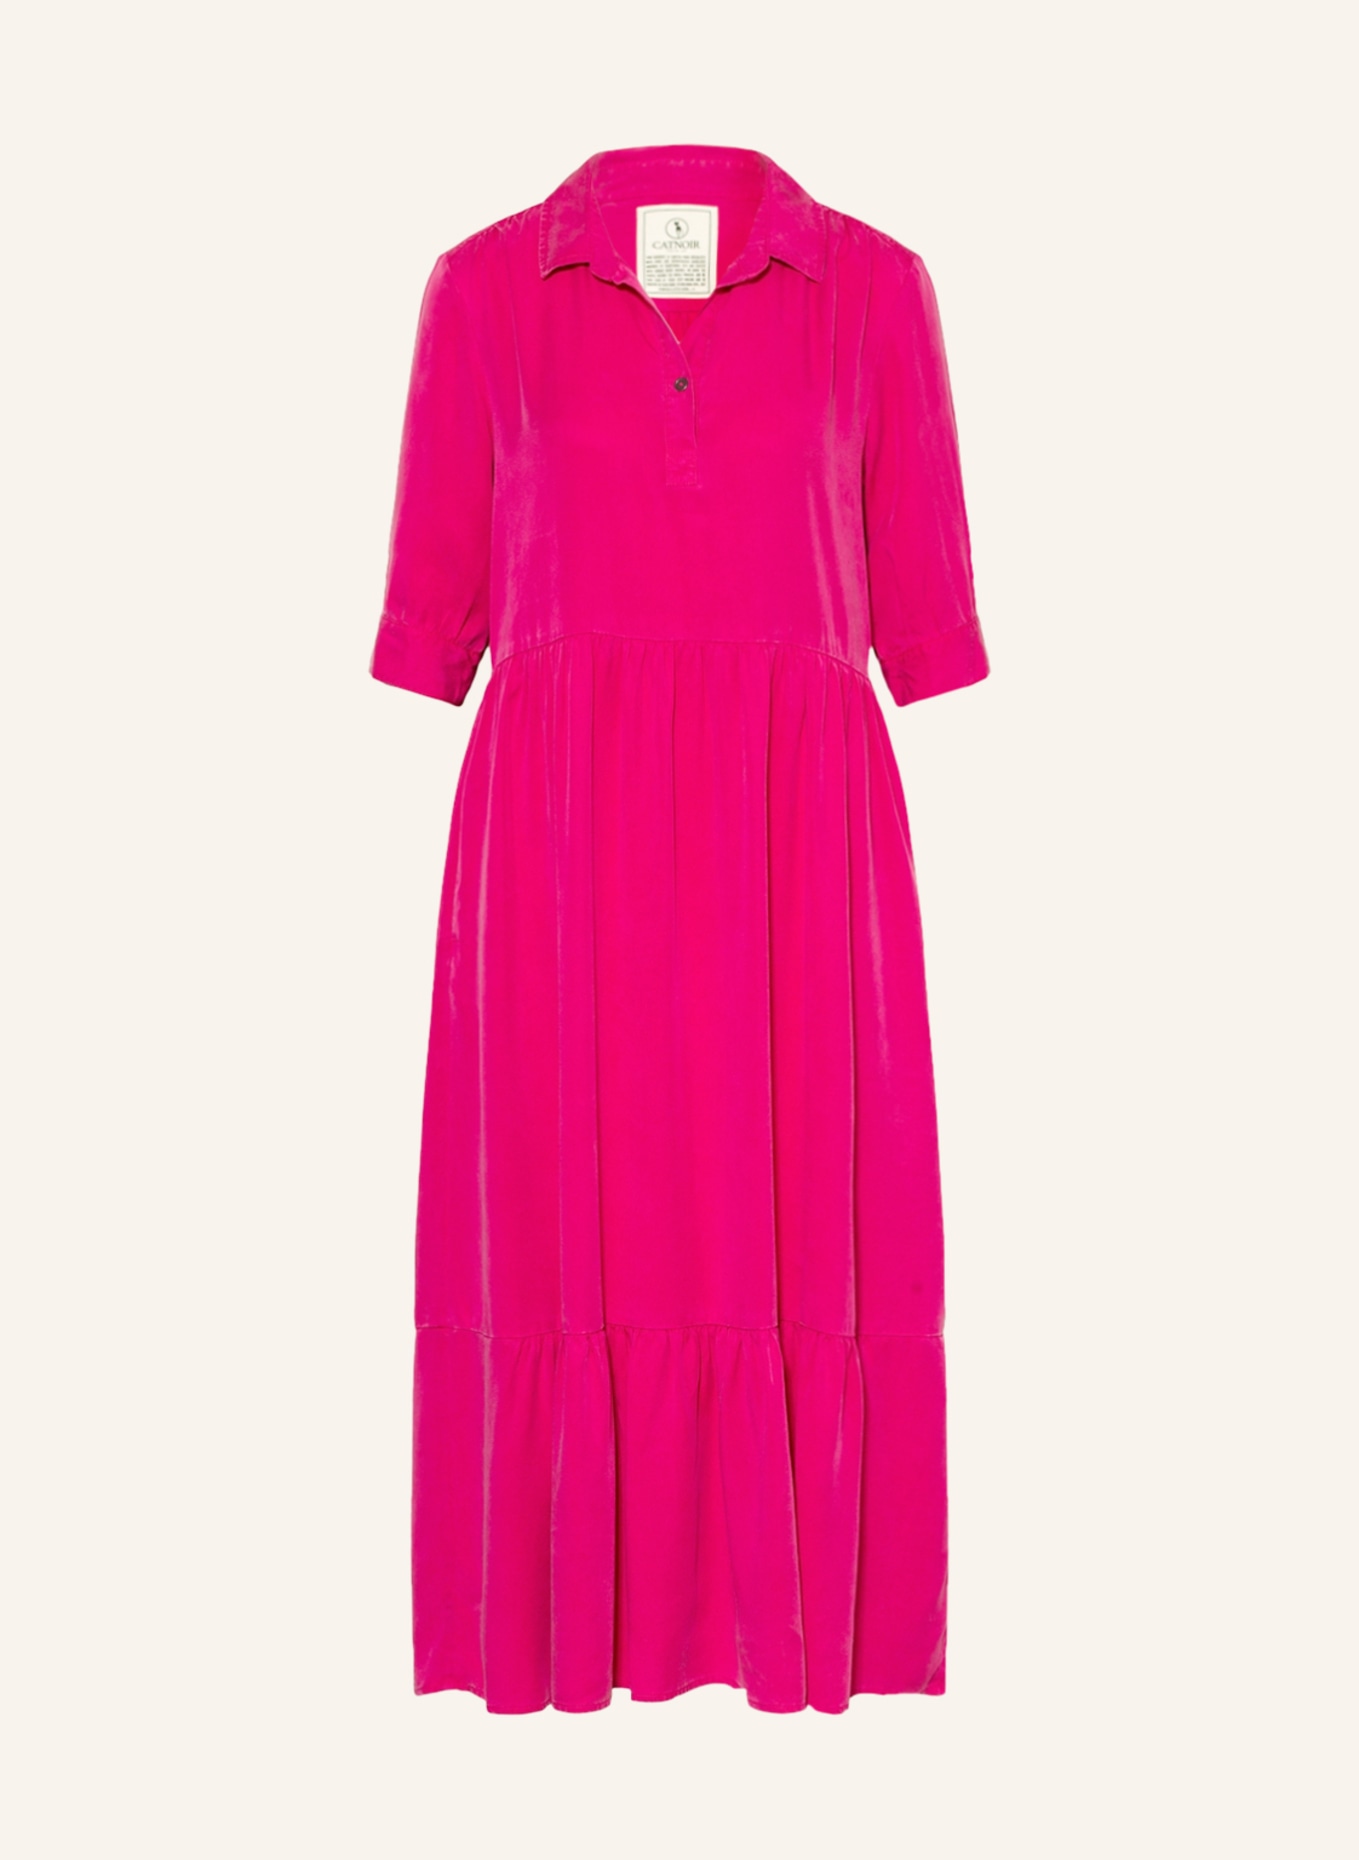 CATNOIR Kleid, Farbe: PINK (Bild 1)